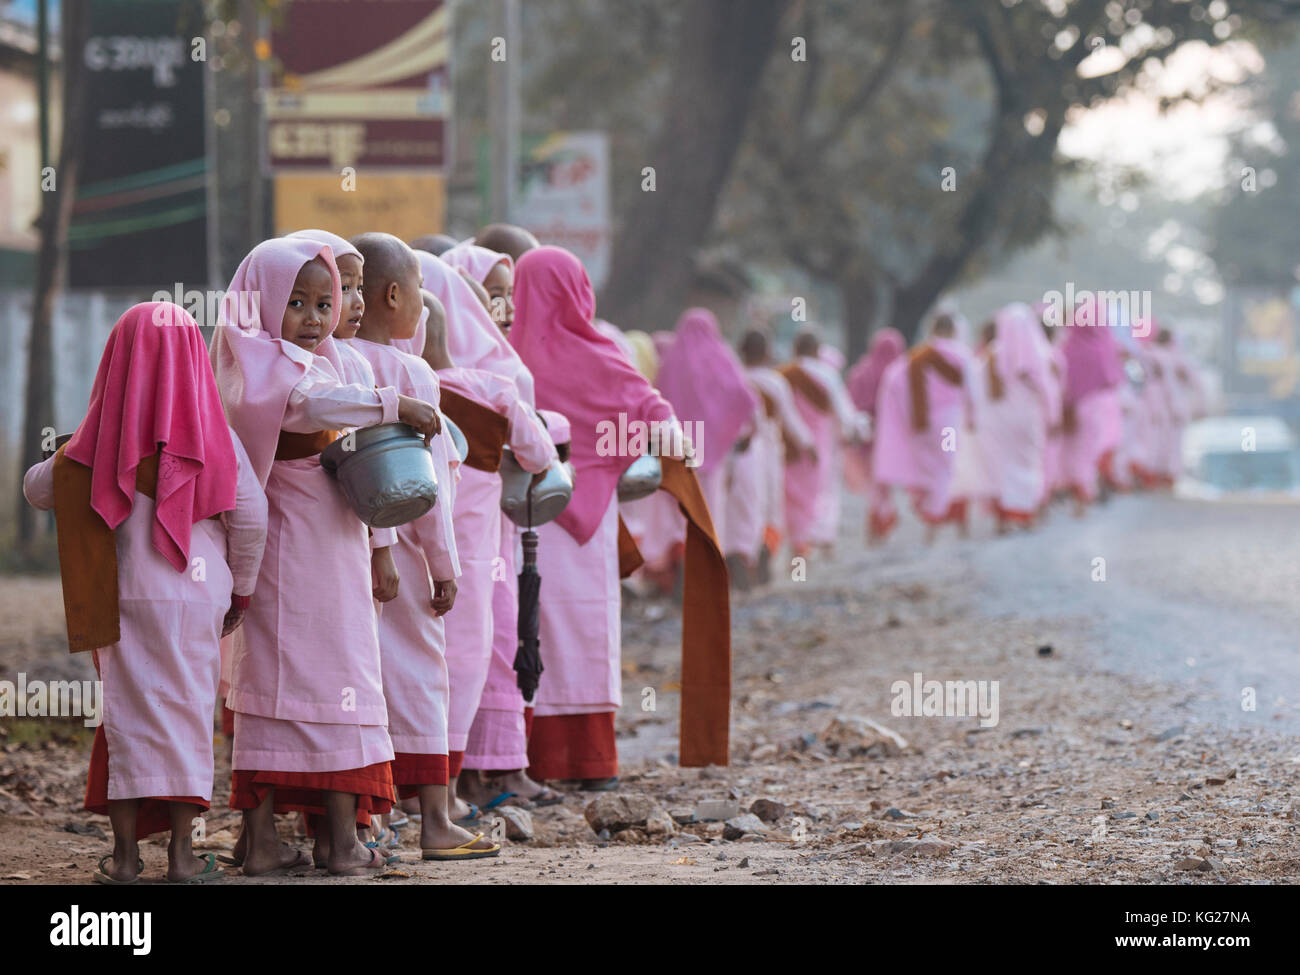 Le monache buddiste raccogliendo elemosine al mattino presto vicino a hsipaw, stato shan, Myanmar (Birmania), Asia Foto Stock